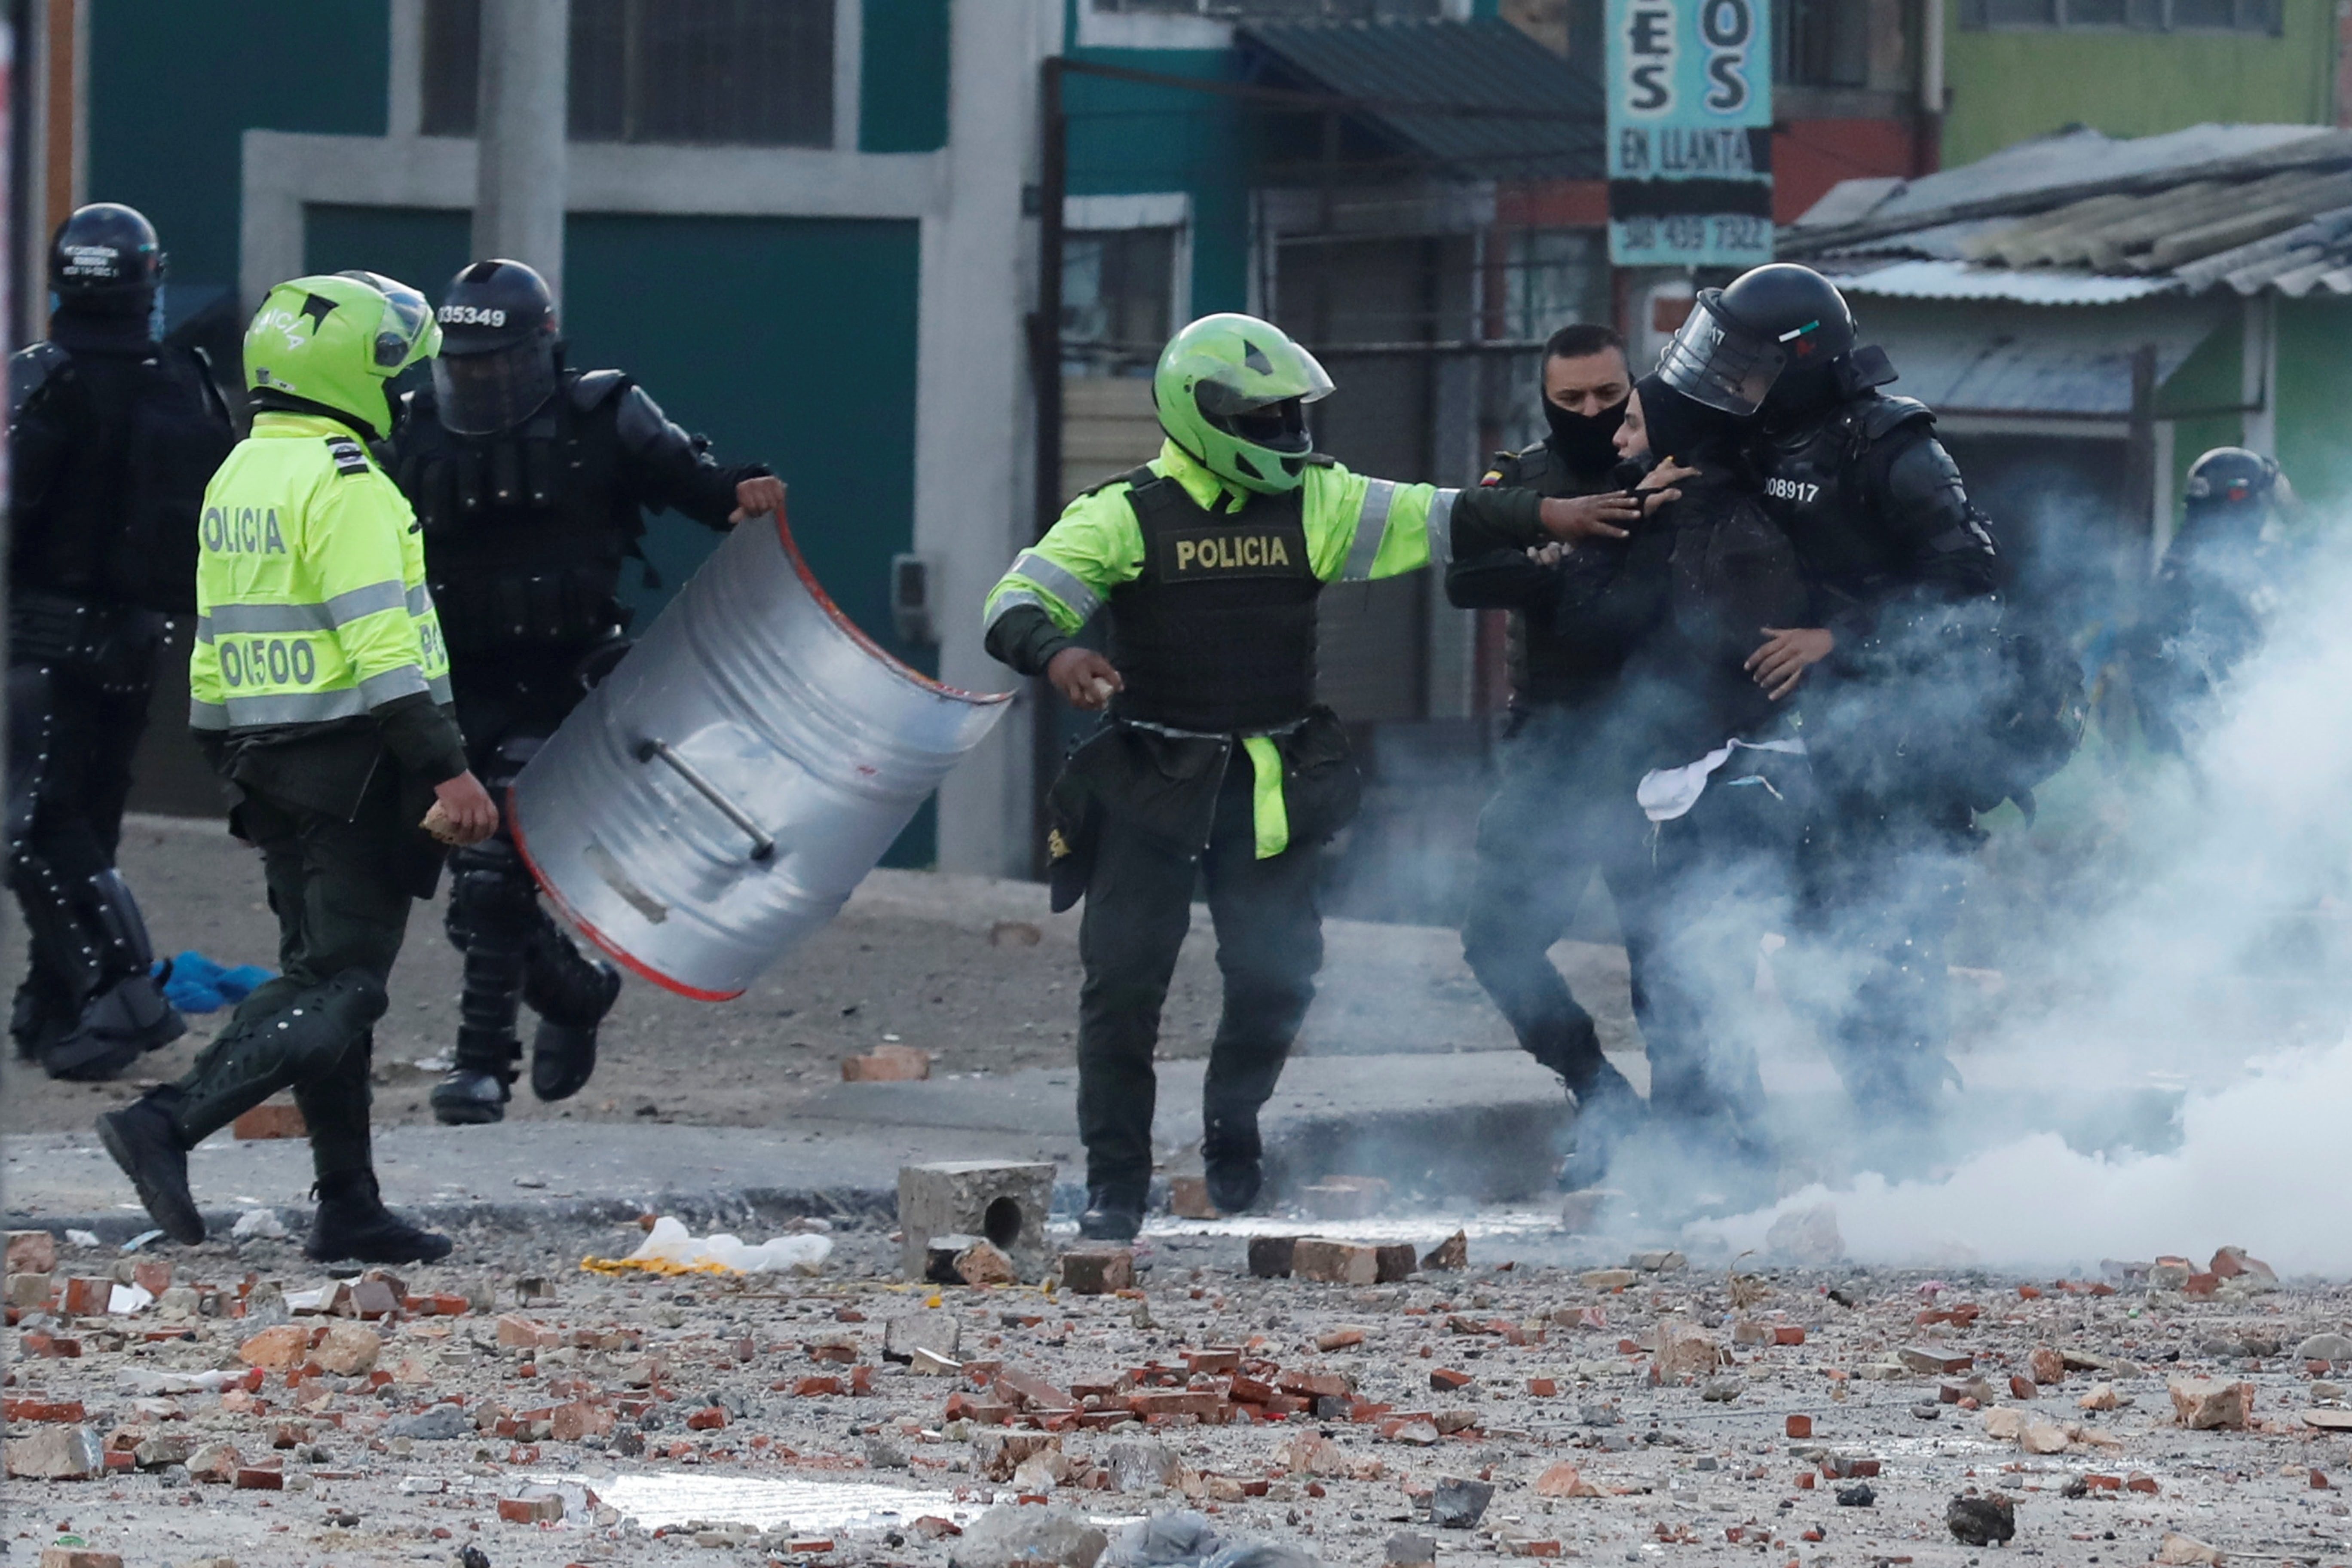 Policías detenidos por irregularidades durante el paro también podrían ser gestores de paz, aseguró el ministro Alfonso Prada